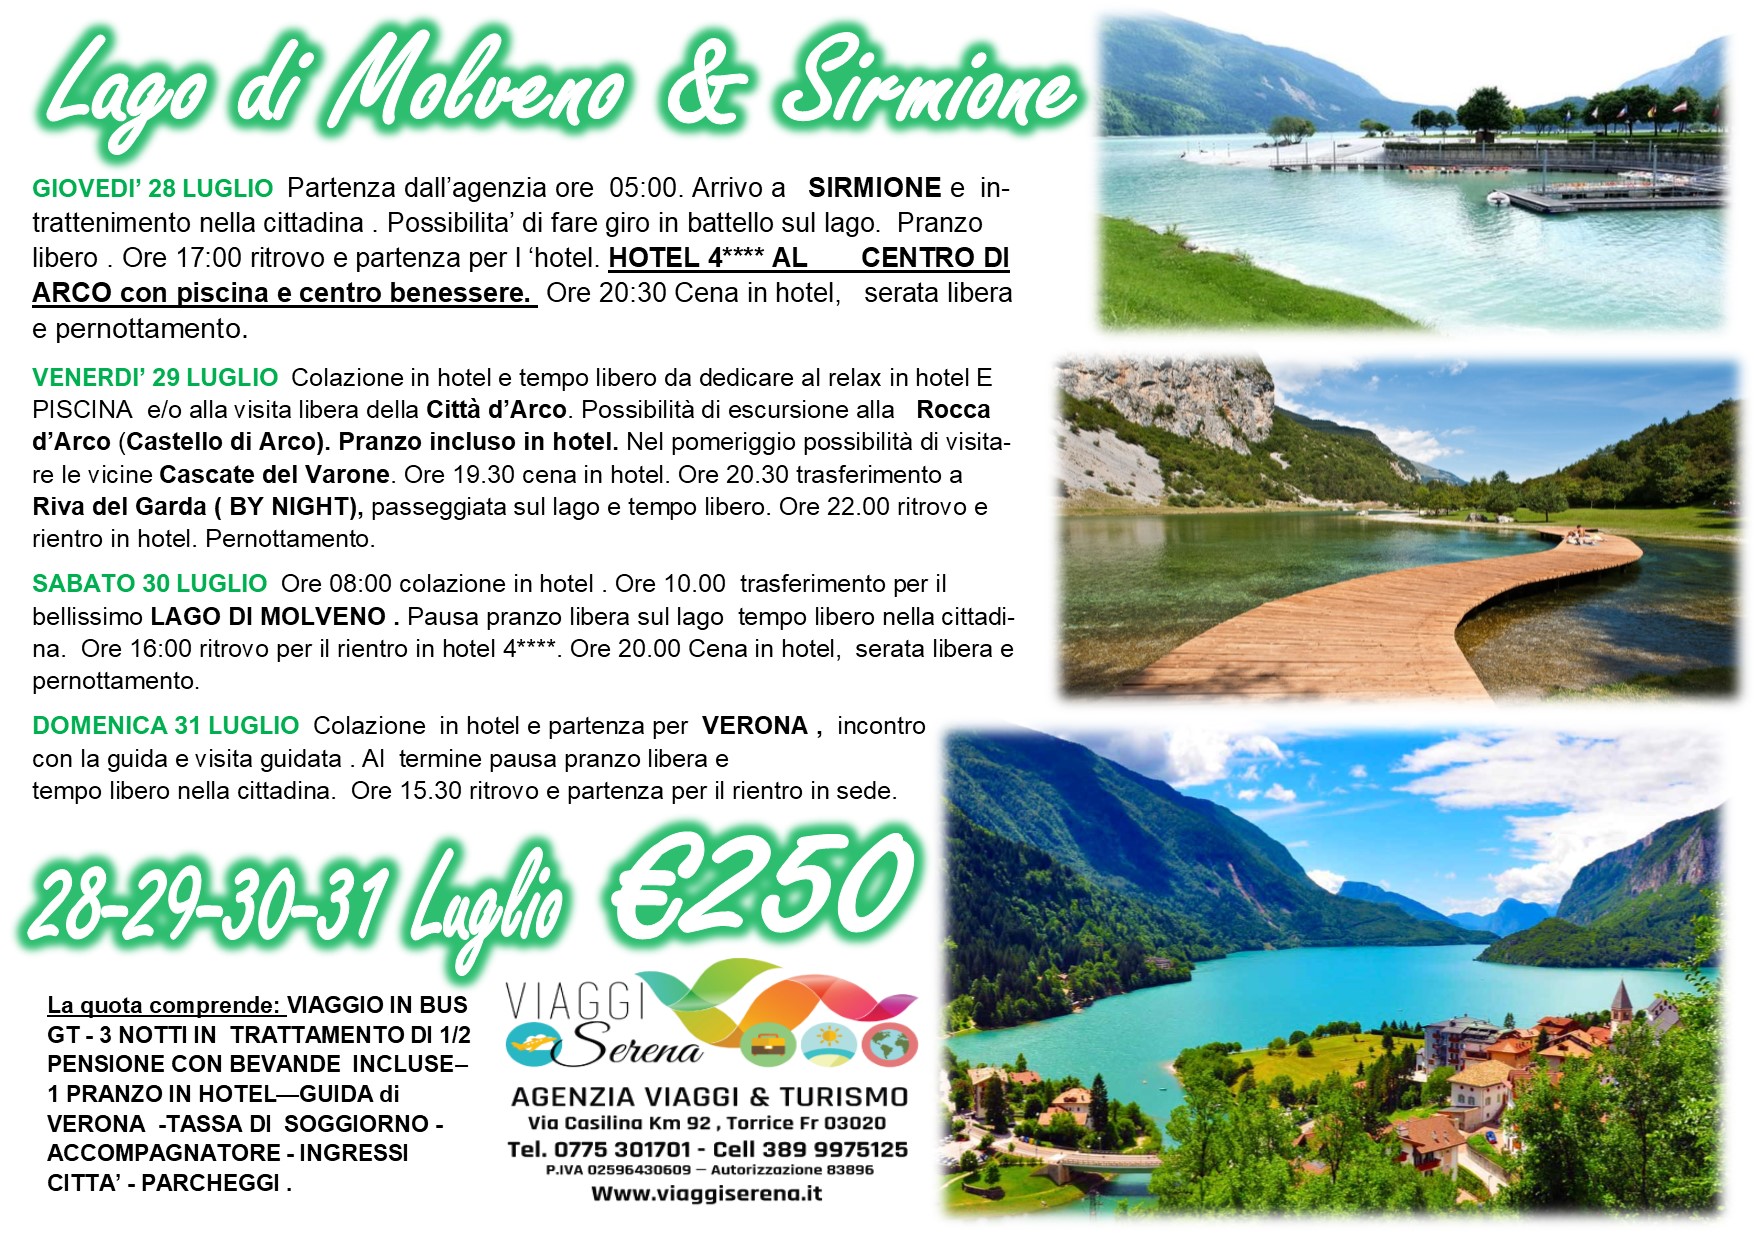 Viaggi di Gruppo: Lago di Molveno, Sirmione & Verona 28-29-30-31 Luglio €250,00